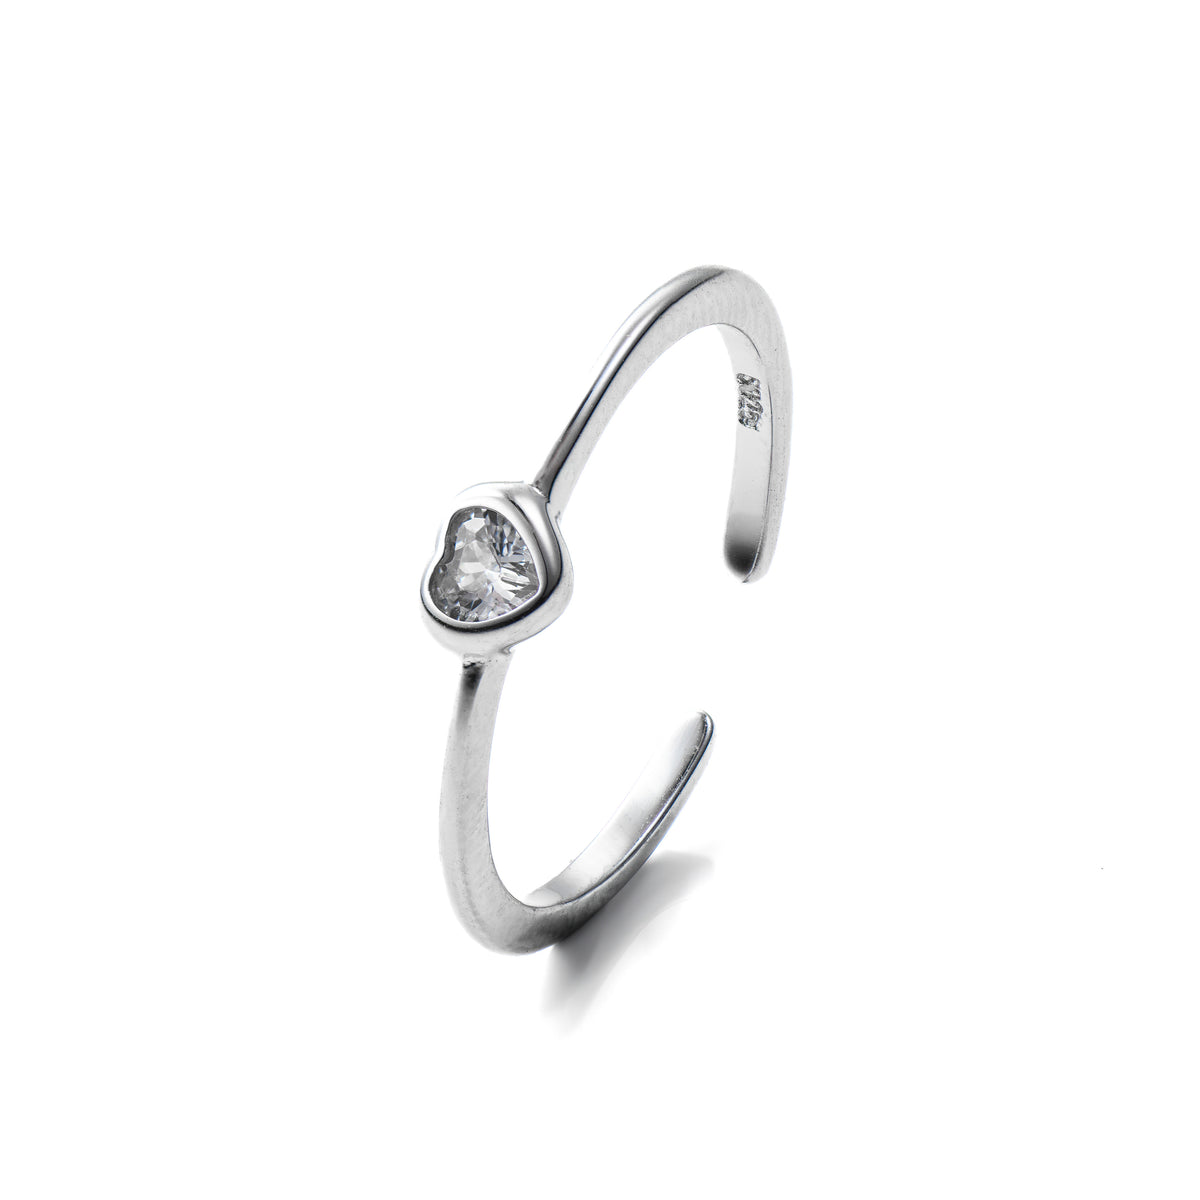 Coeur silver Ring, Maison Stephanie